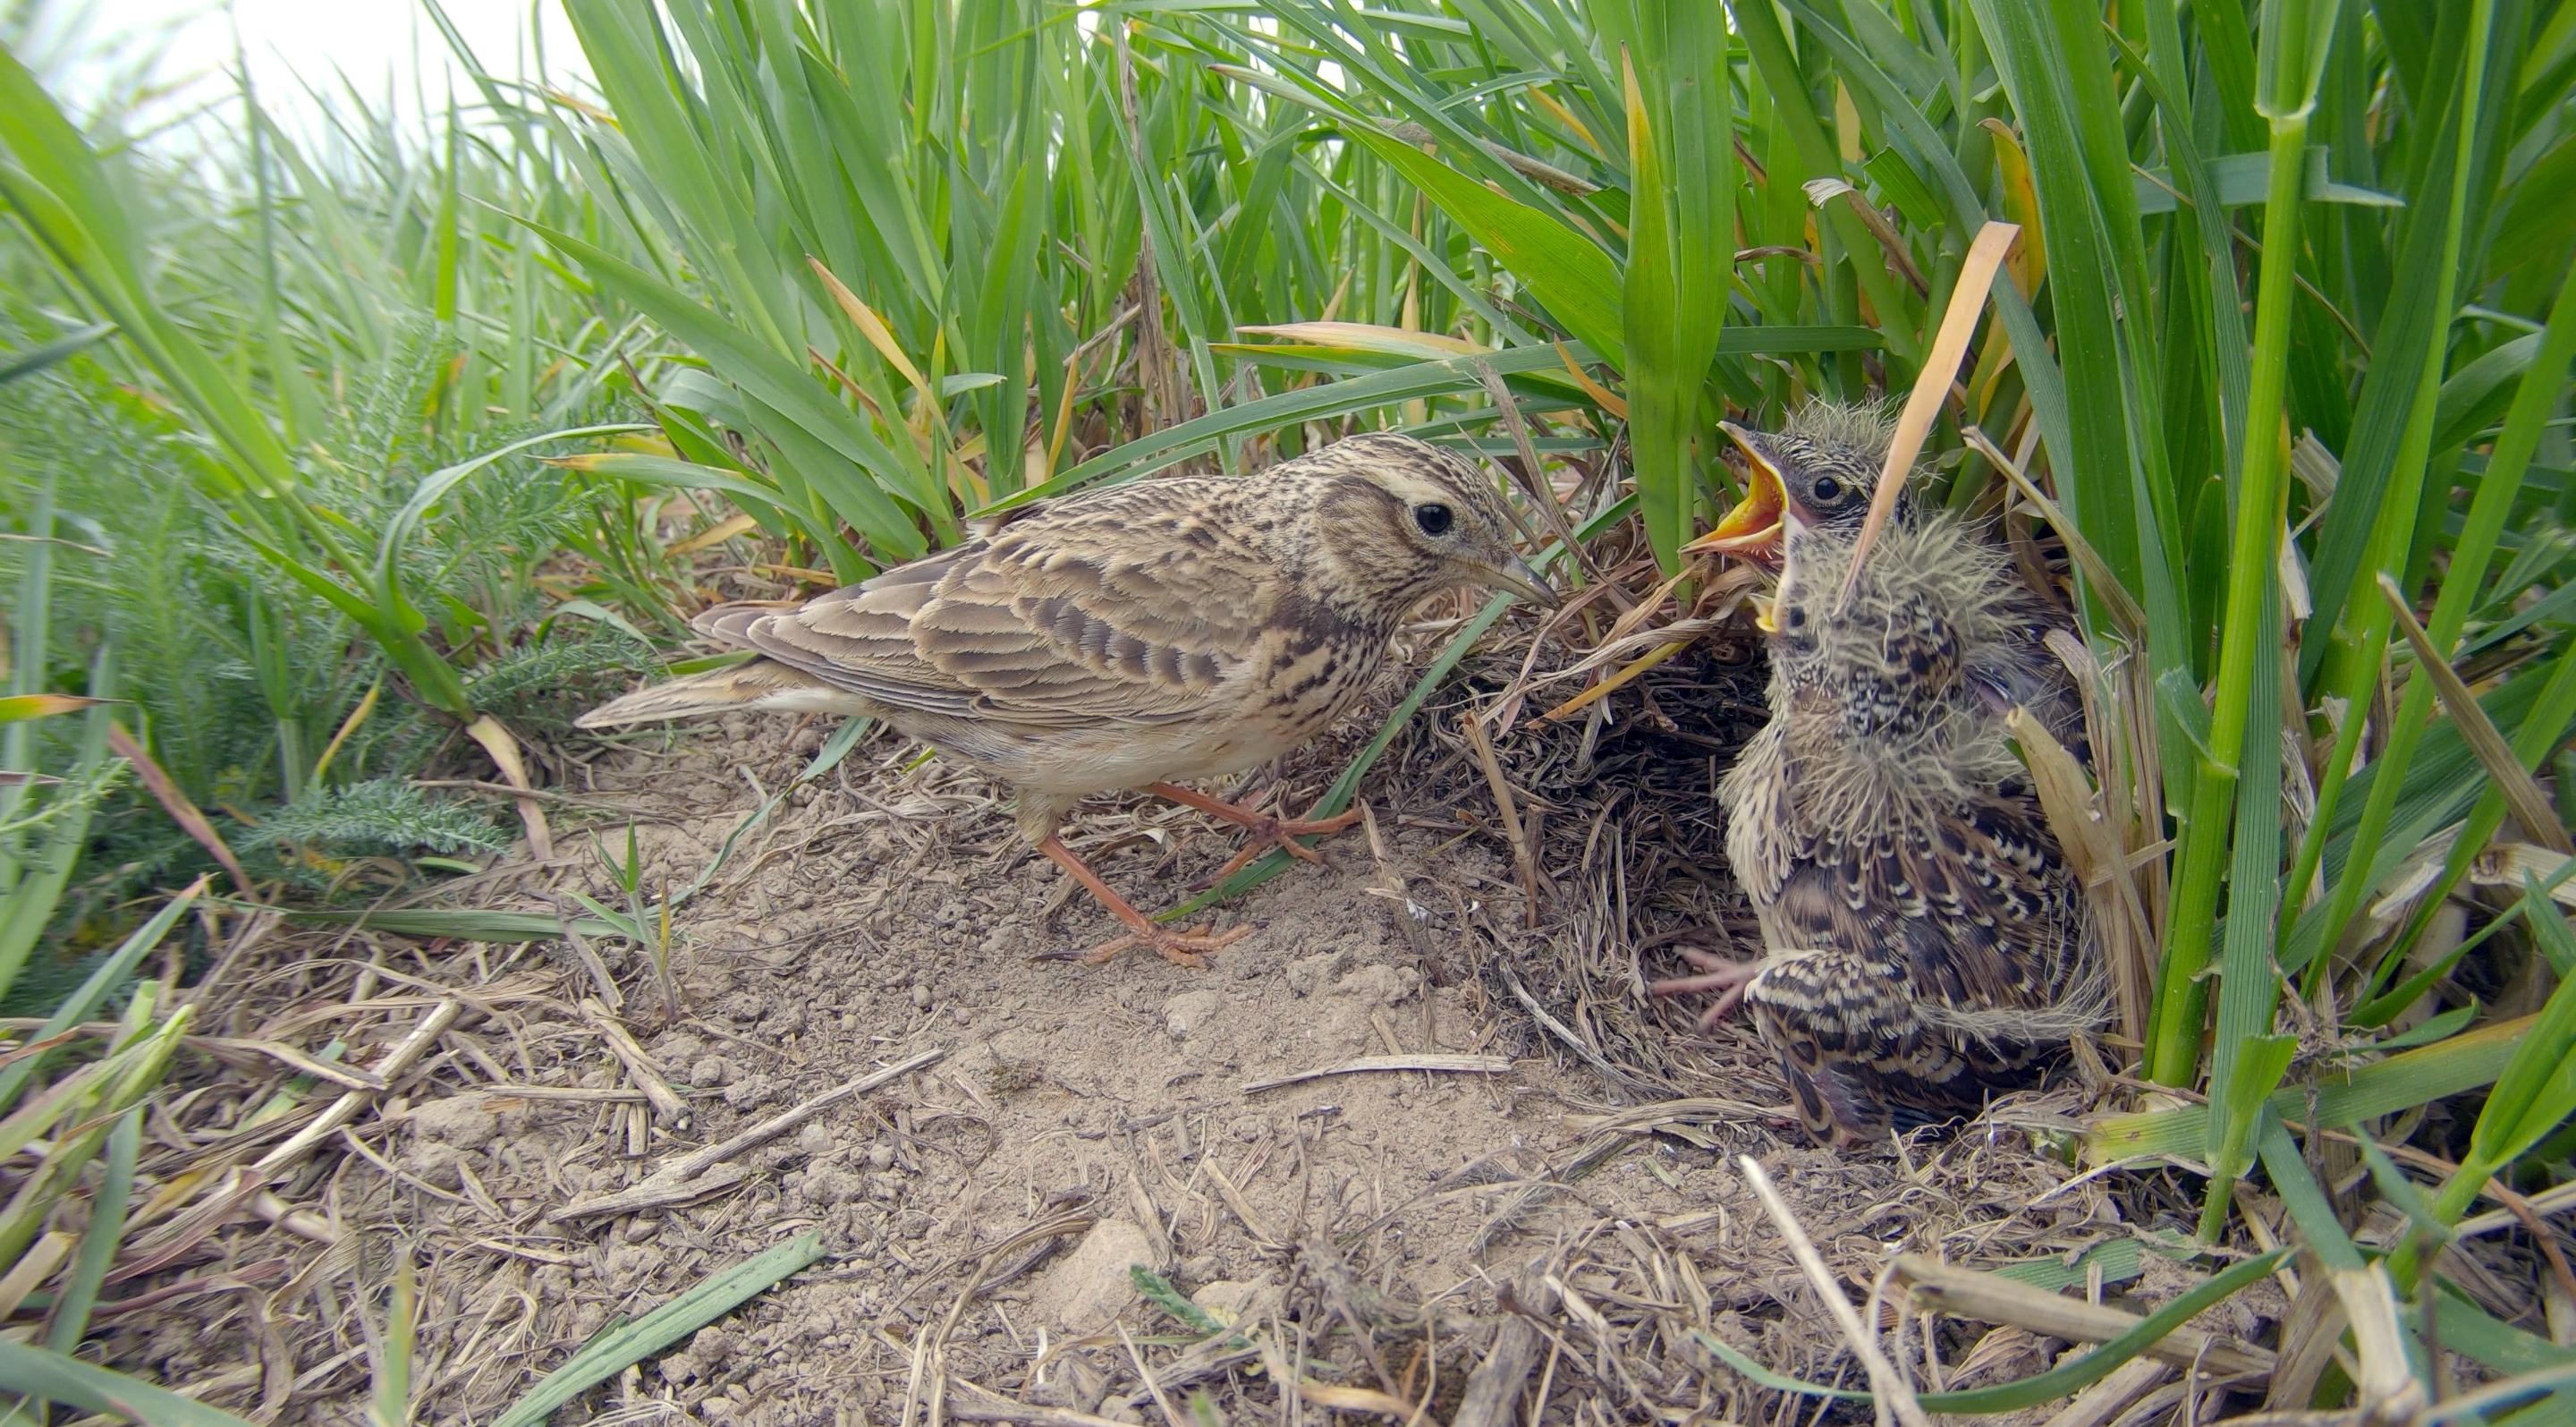 L'alouette des champs a la période de nidification la plus courte parmi les oiseaux chanteurs de la région. Pourtant, de nombreux nids sont écrasés par les tracteurs. [BIRDLIFE - SHUTTERSTOCK]